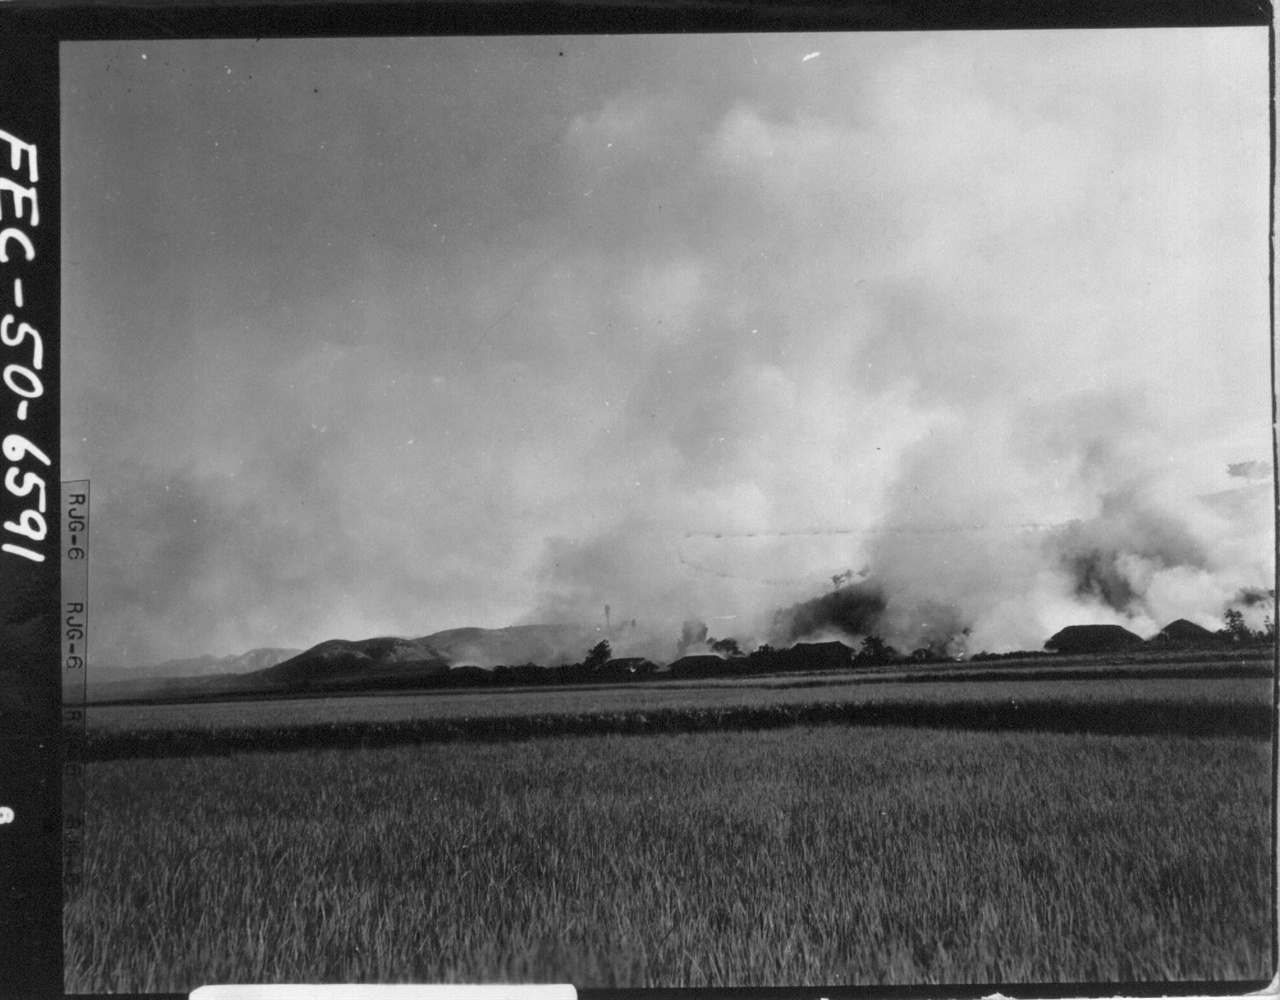  1950. 8. 20. 포항 부근의 한 마을이 미군 전투기 폭격으로 불타고 있다.